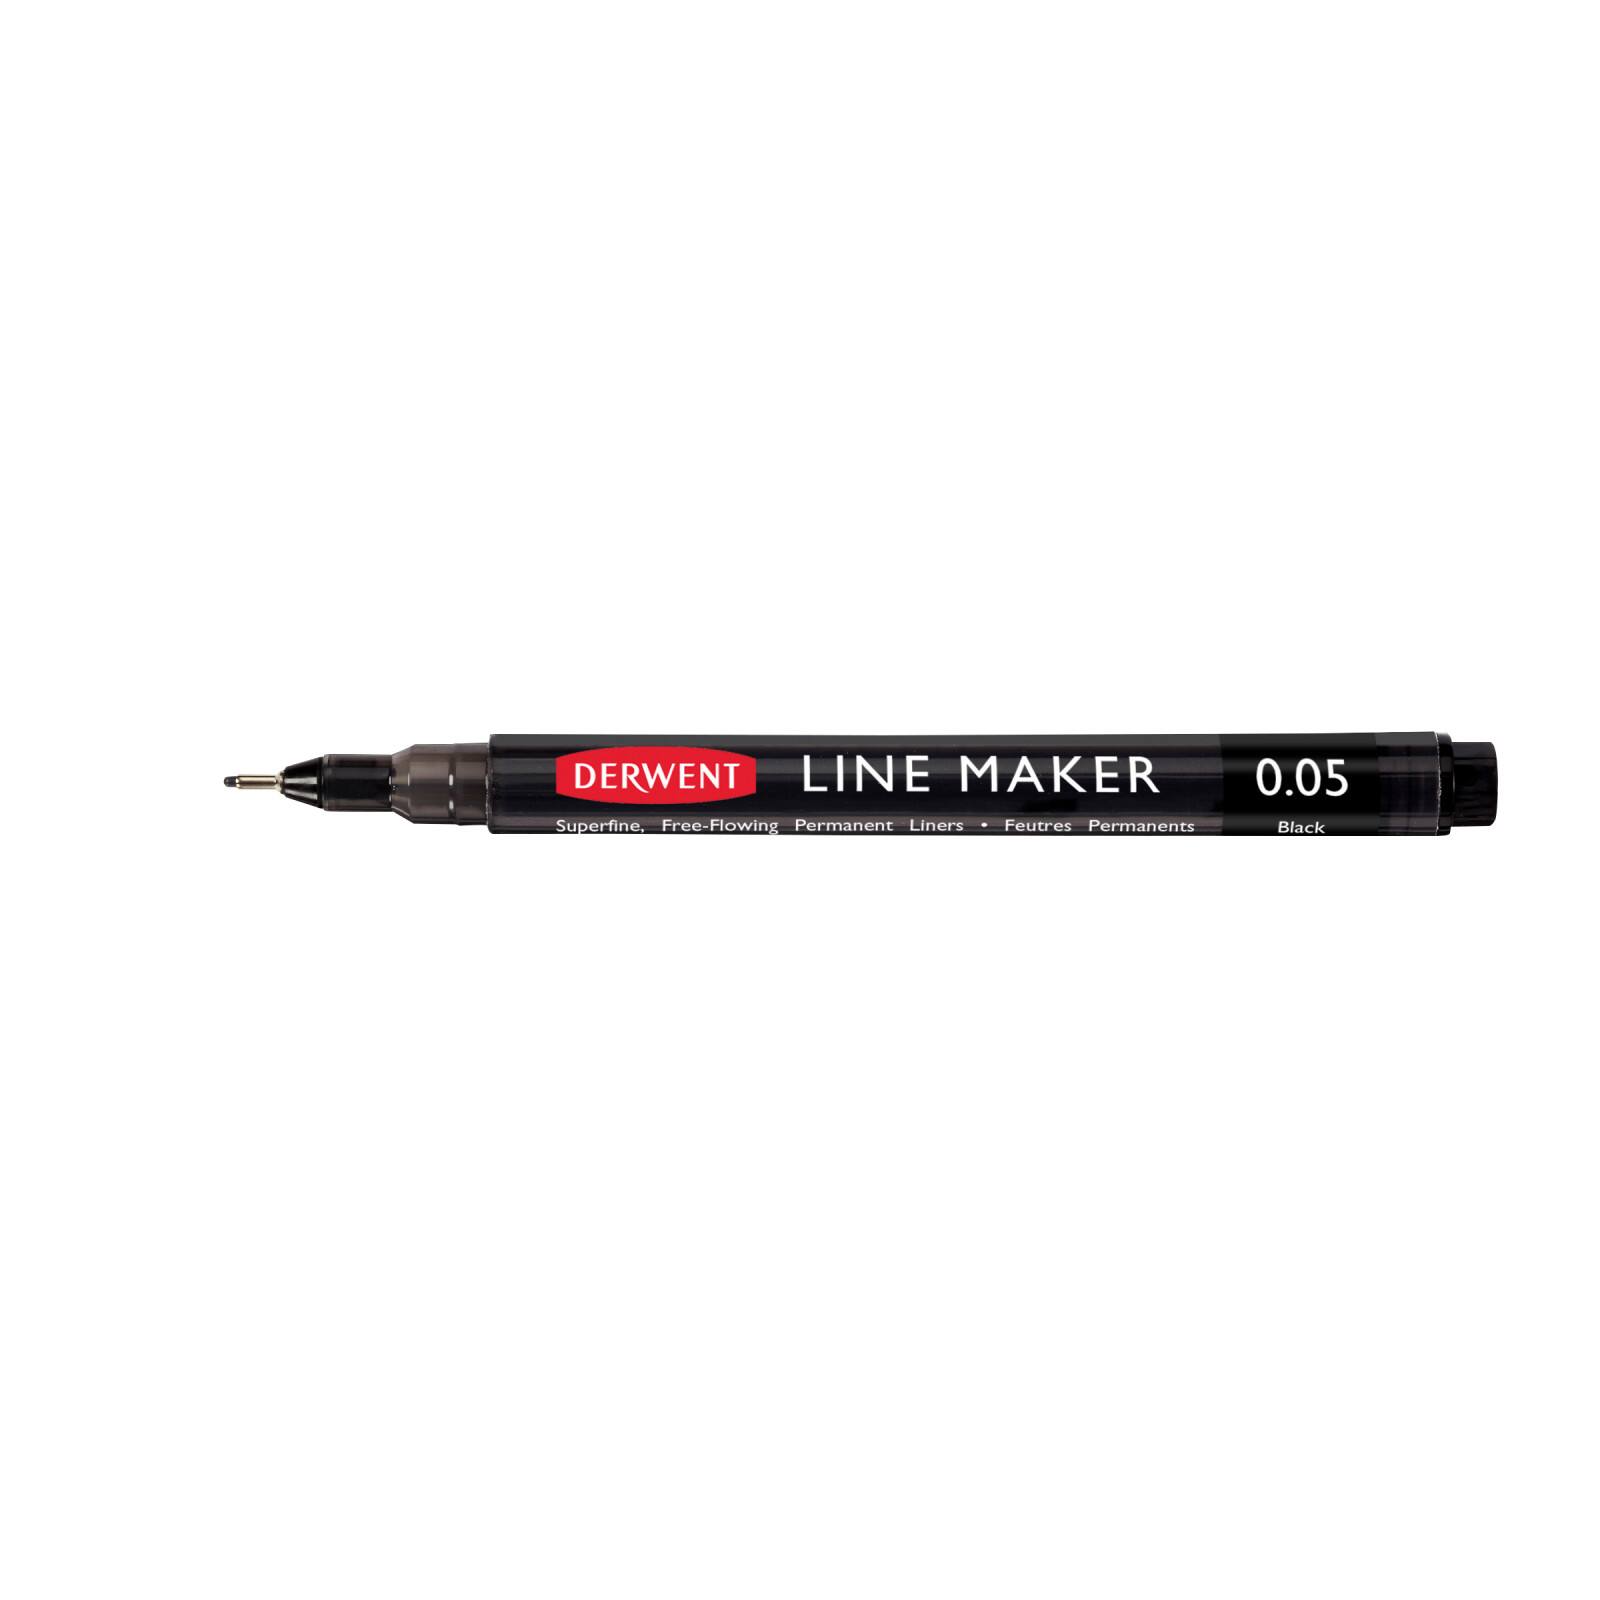 Derwent Superfine Line Maker Pen, Black